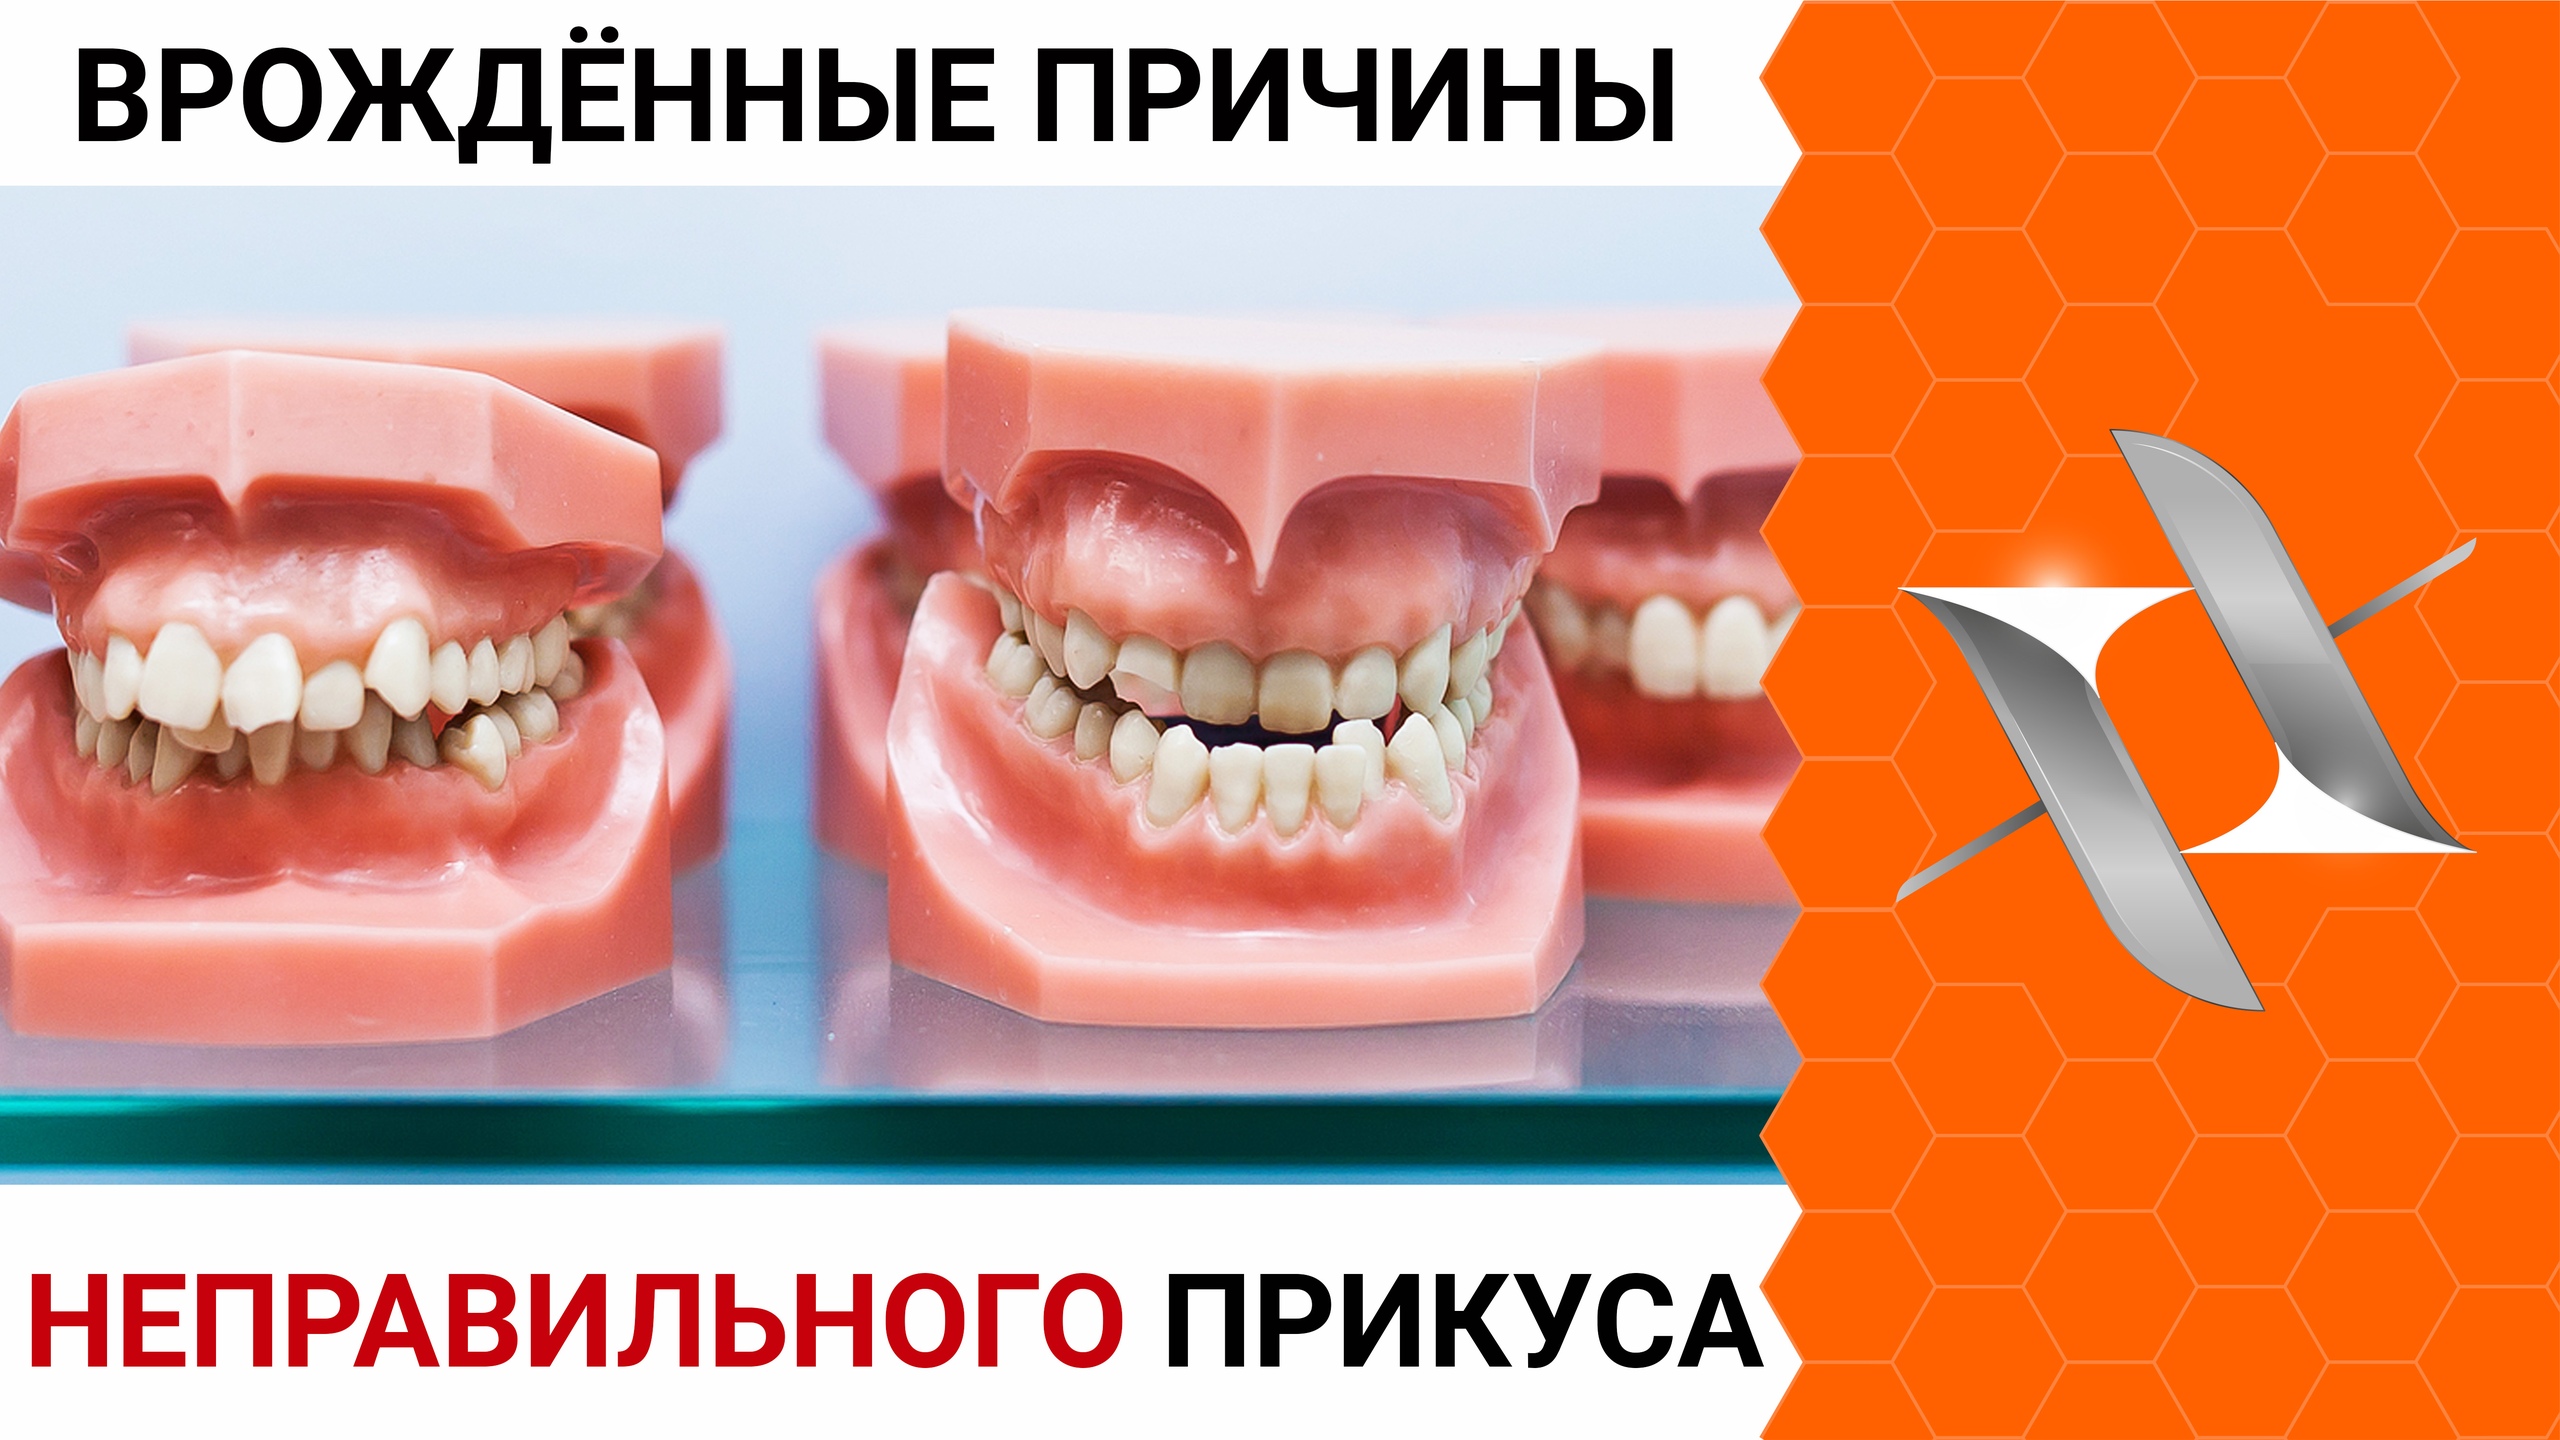 НЕПРАВИЛЬНЫЙ ПРИКУС - Врождённые причины ортодонтических аномалий.